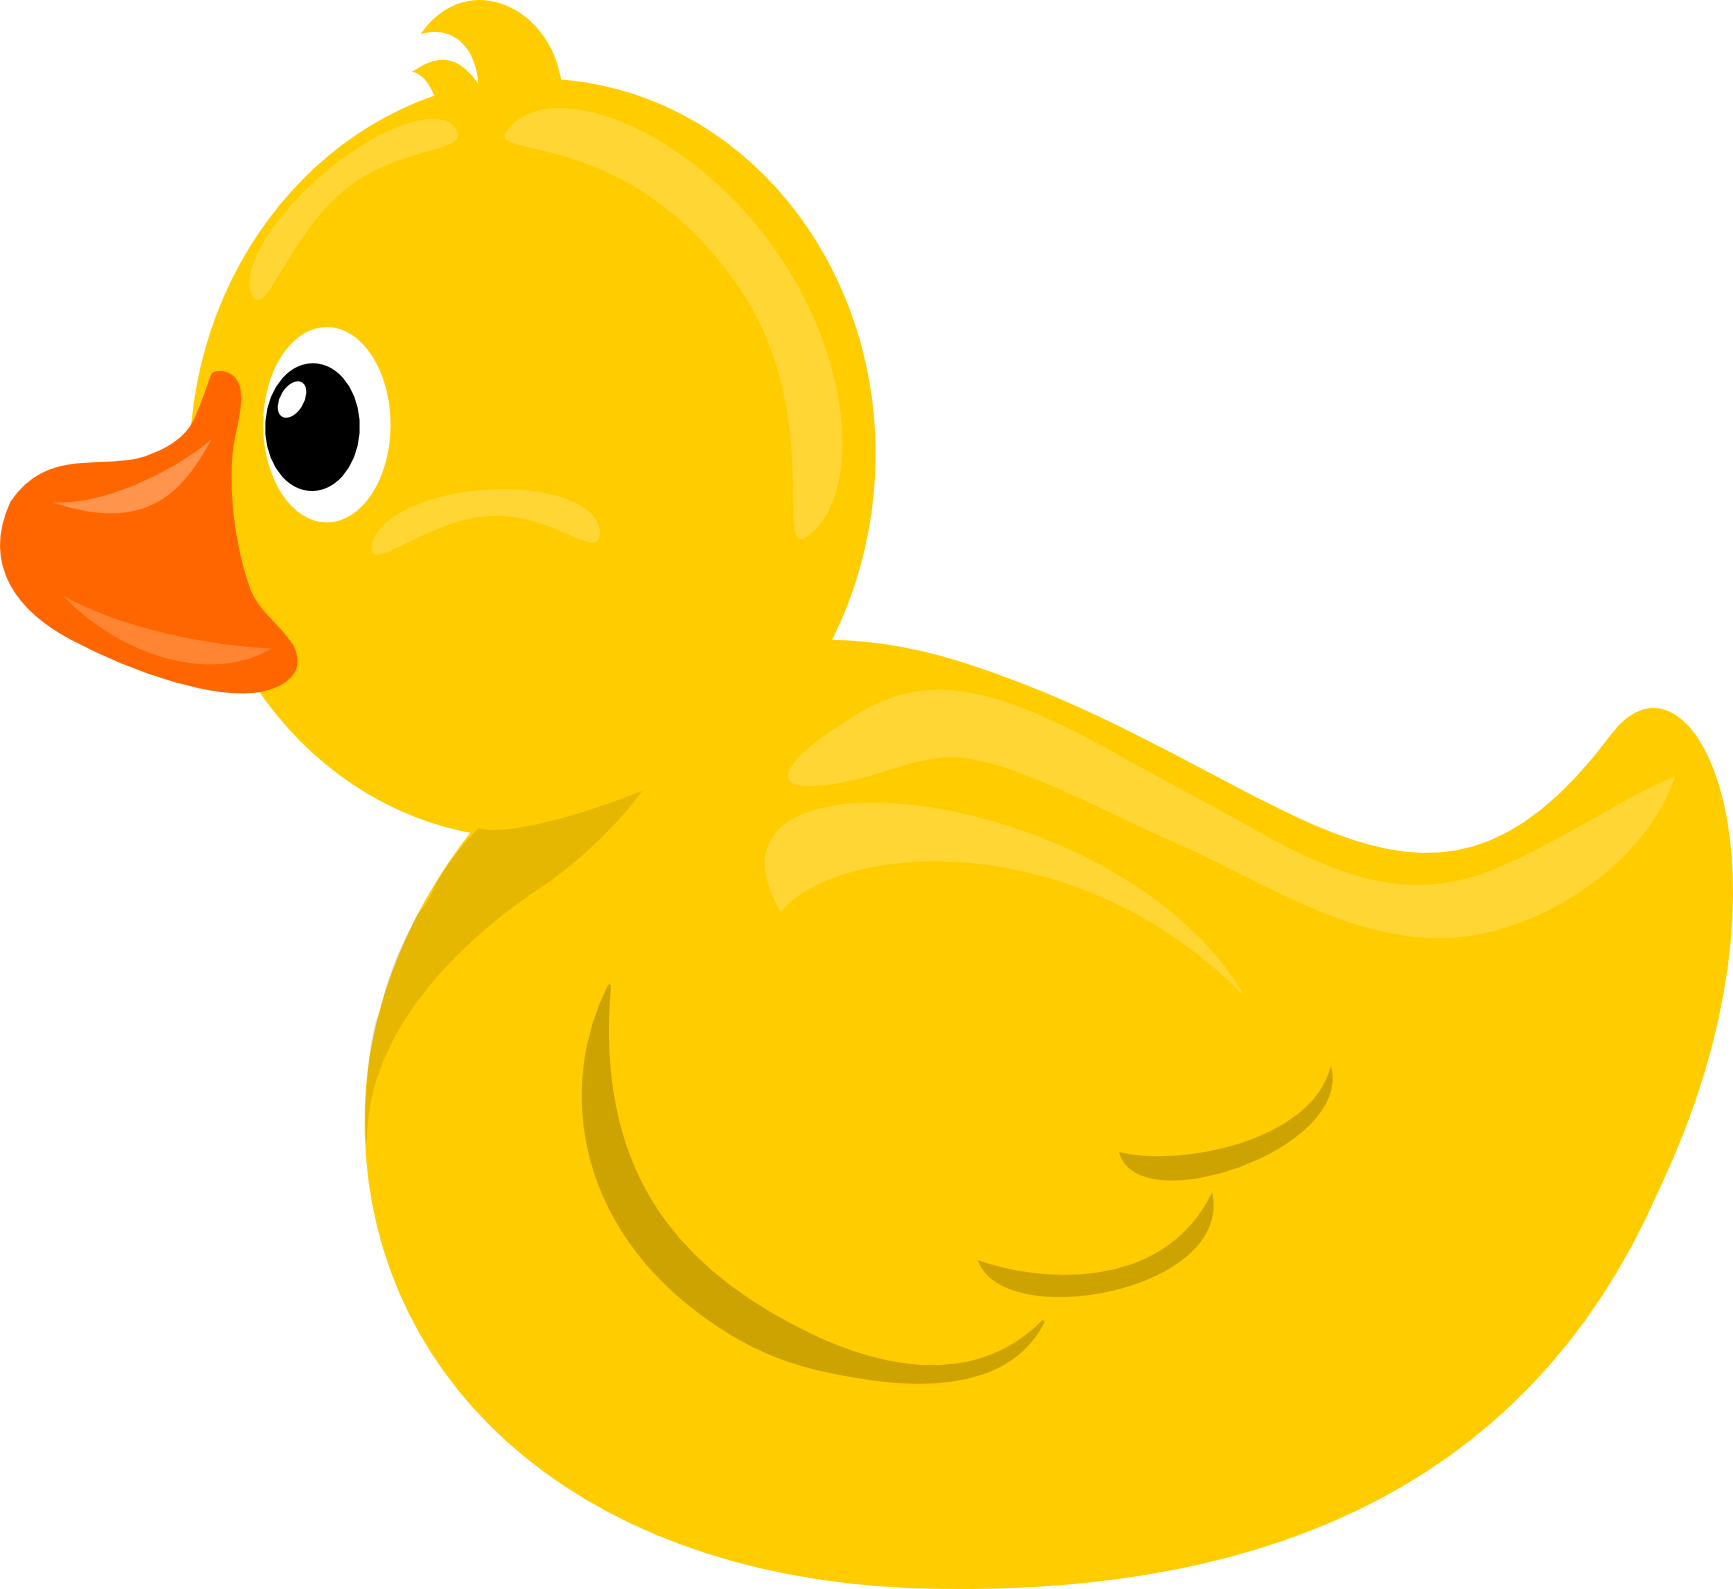 Rubber duck clipart stormdesi - Clipart Ducks